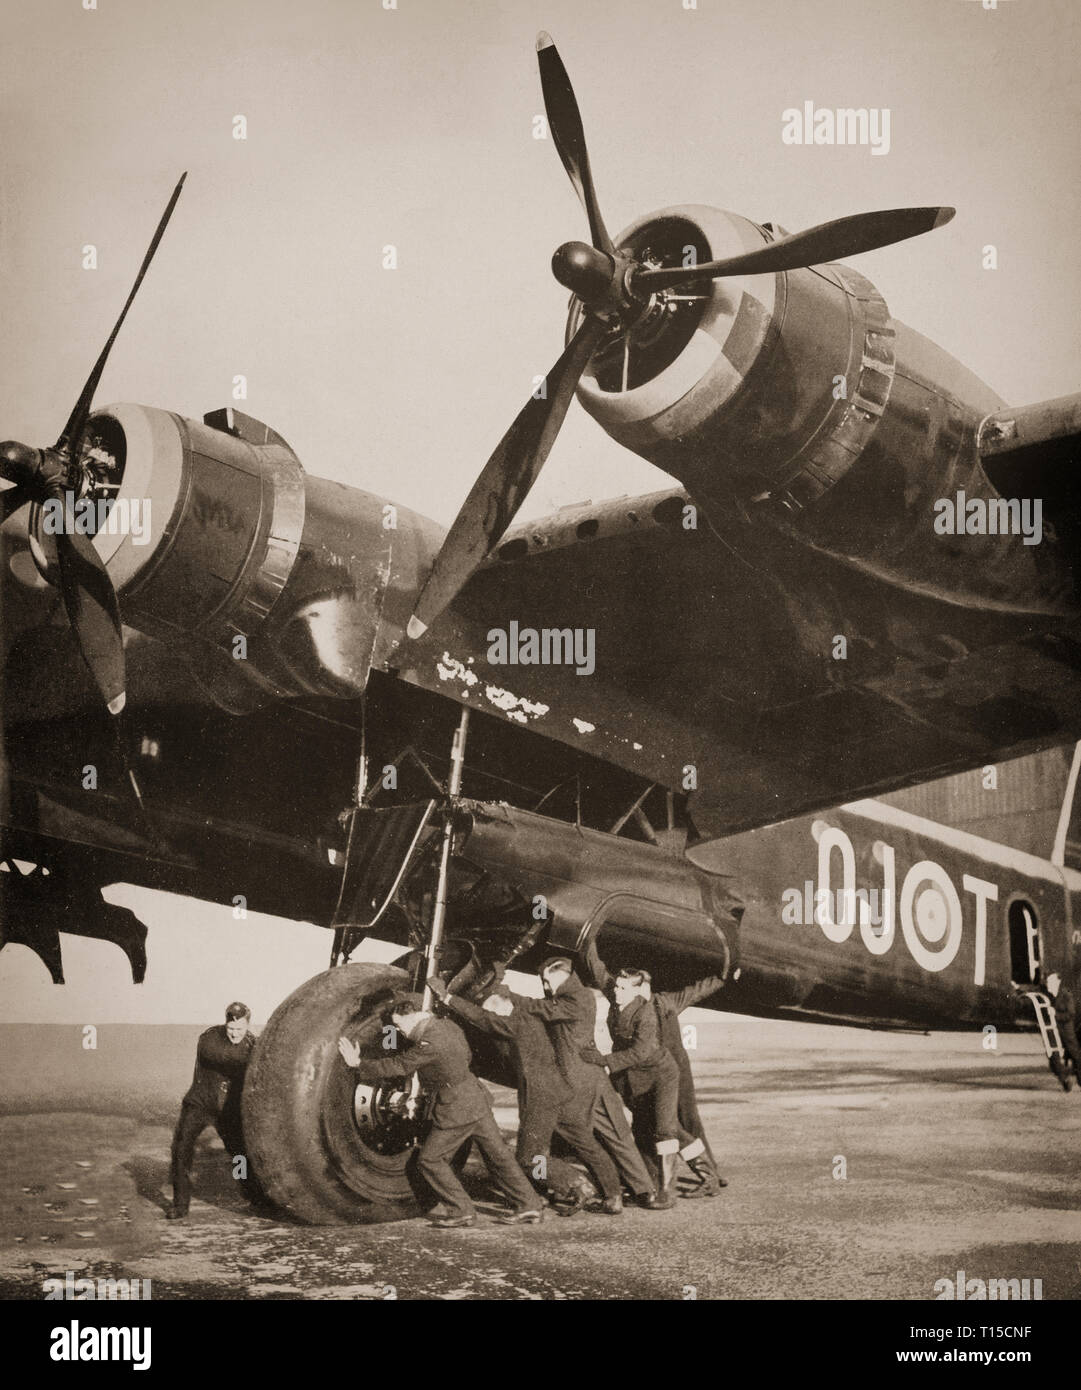 Déménagement de l'équipe au sol un 20 tonne courte Stirling, de bombardiers lourds britanniques de la Seconde Guerre mondiale. Le premier bombardier quadrimoteur à introduire dans le service de l'escadron de la Royal Air Force au début de l'année 1941. Le Stirling a été relégué à la deuxième ligne de douane à partir de la fin de 1943, en raison de l'augmentation de la disponibilité de la plus capable et Handley Page Halifax Avro Lancaster, qui a repris les bombardements stratégiques de l'Allemagne. Banque D'Images